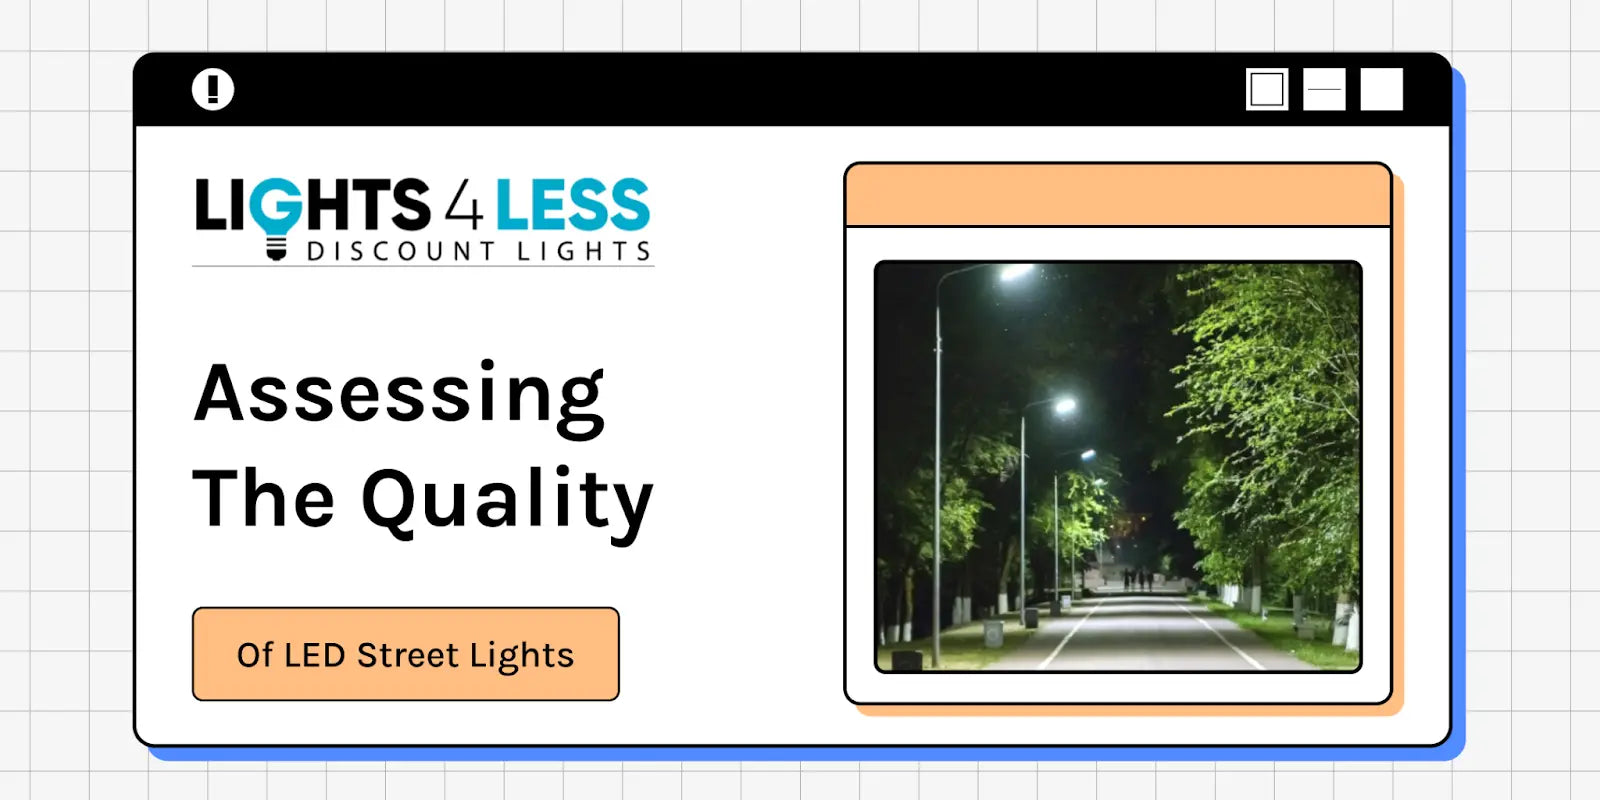 Are LED Street Lights Good